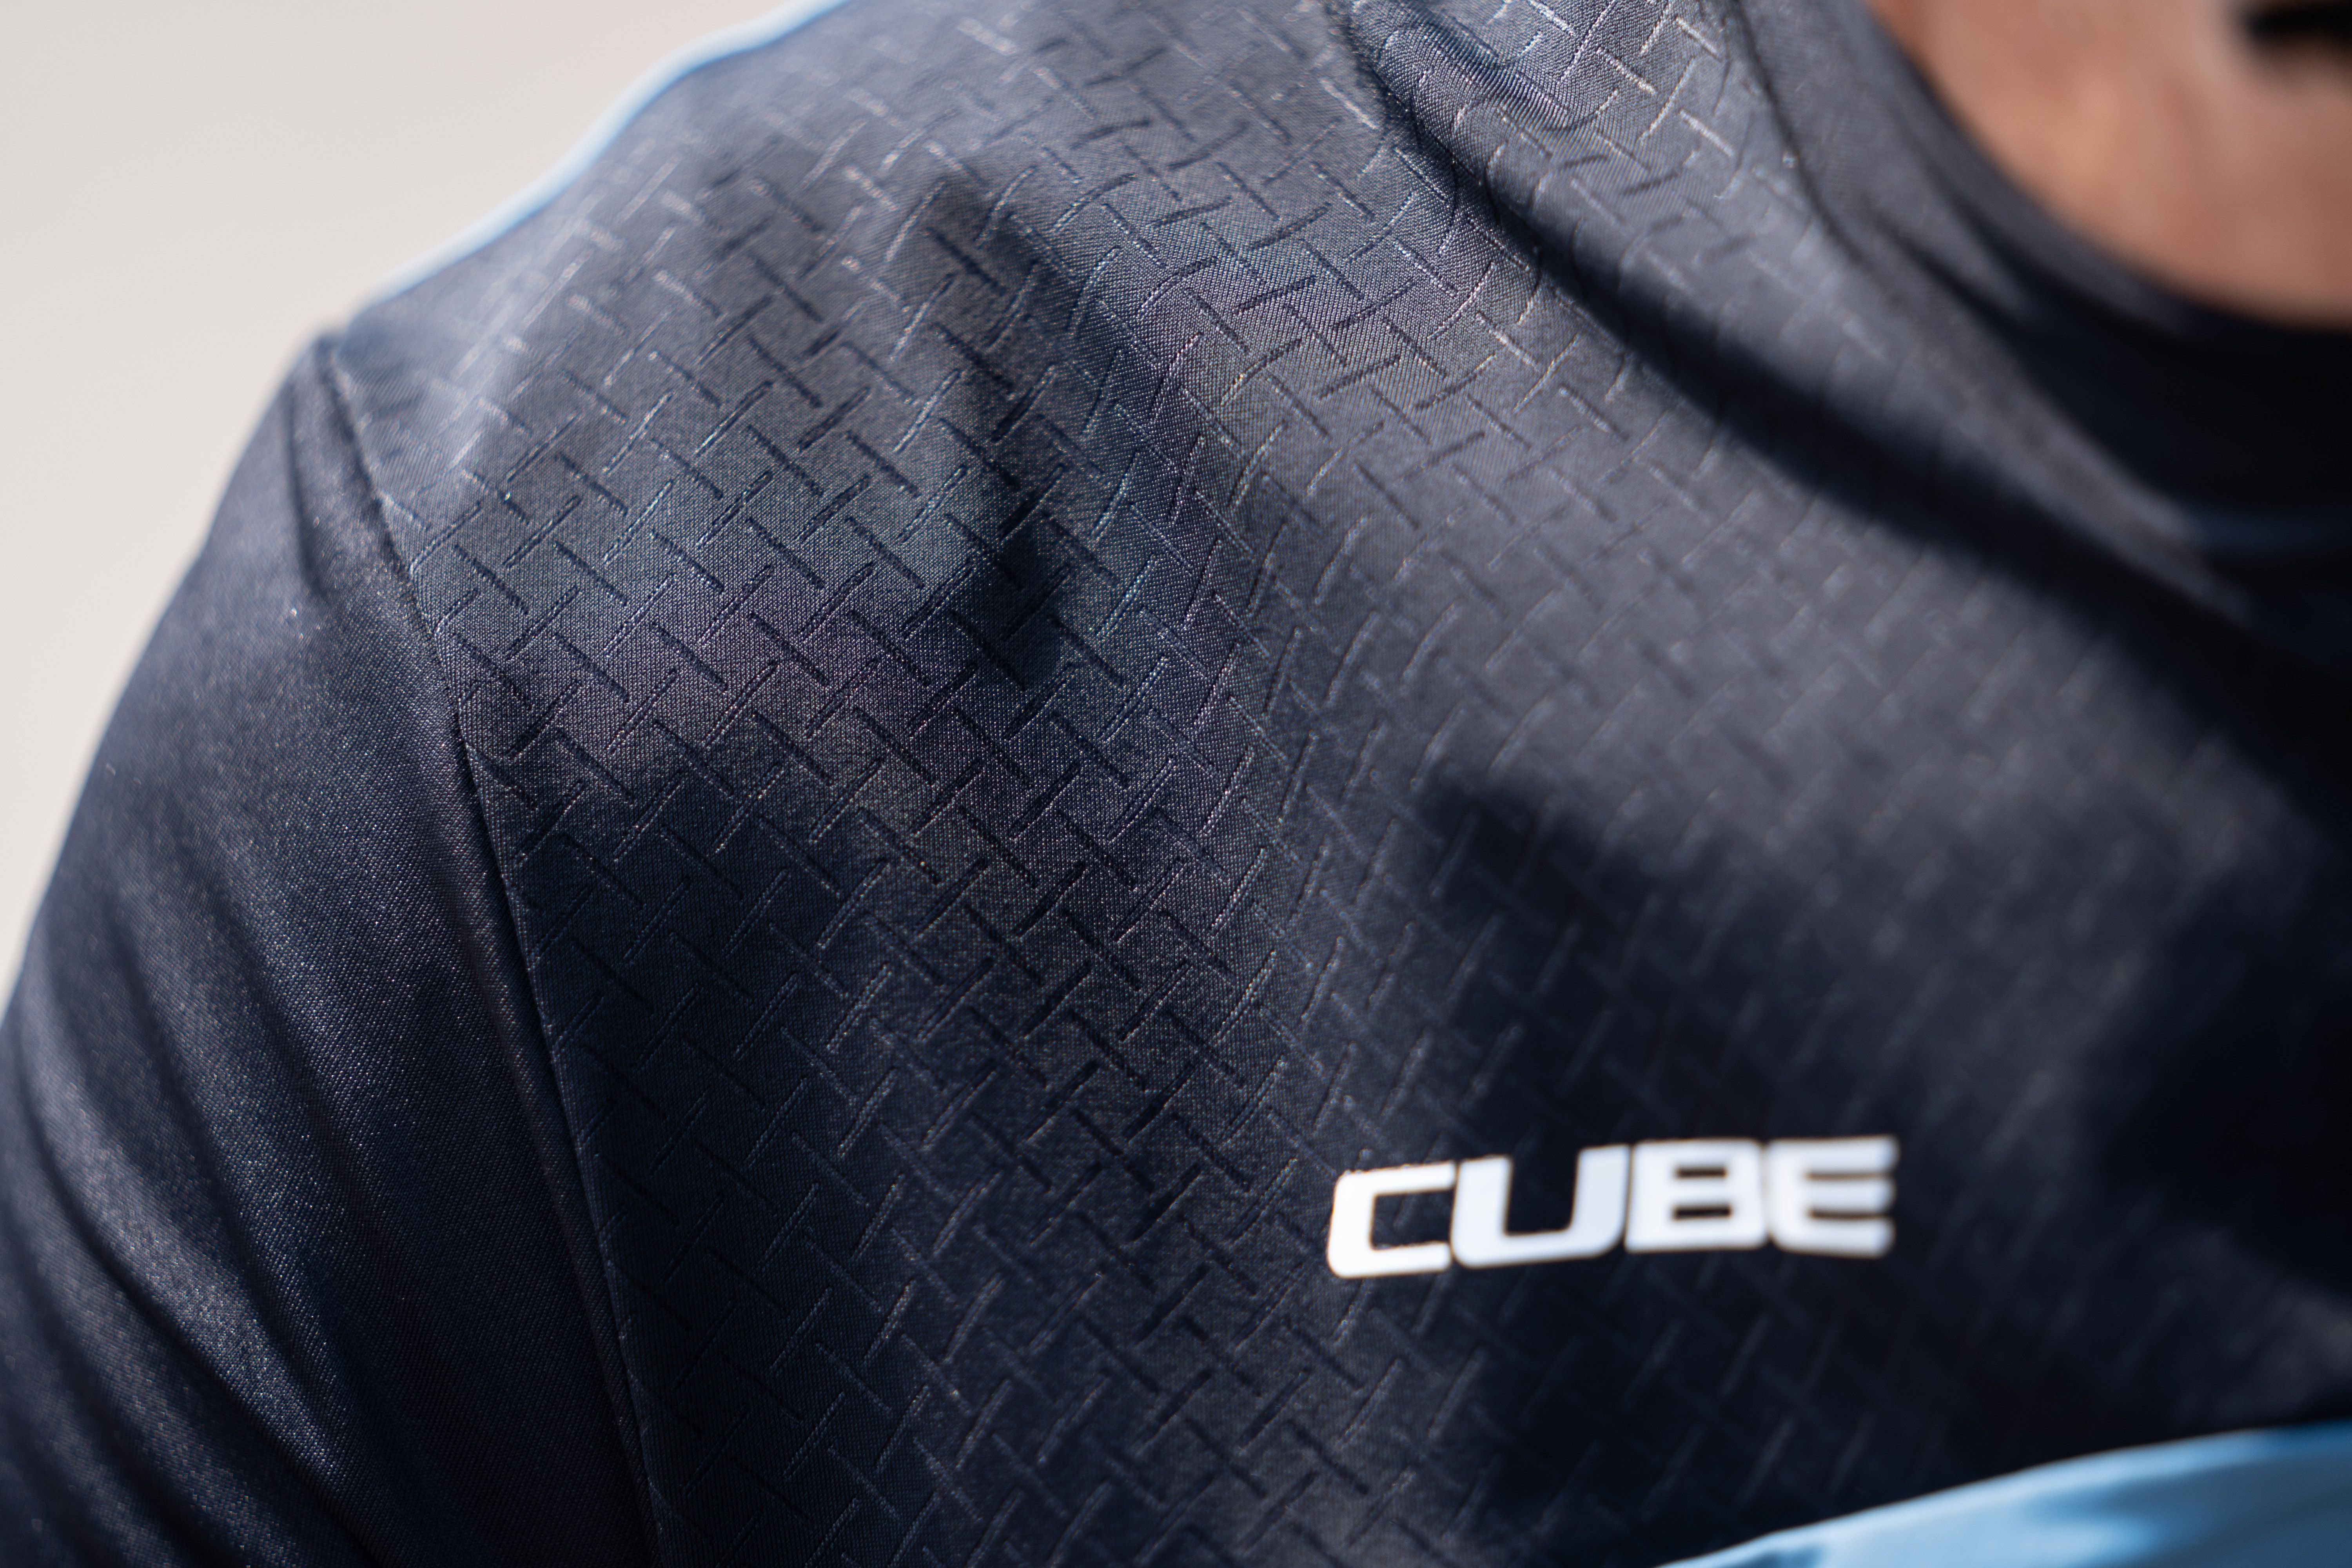 vod Voorkomen Voorbijgaand Review Cube Blackline wielershirt en koersbroek